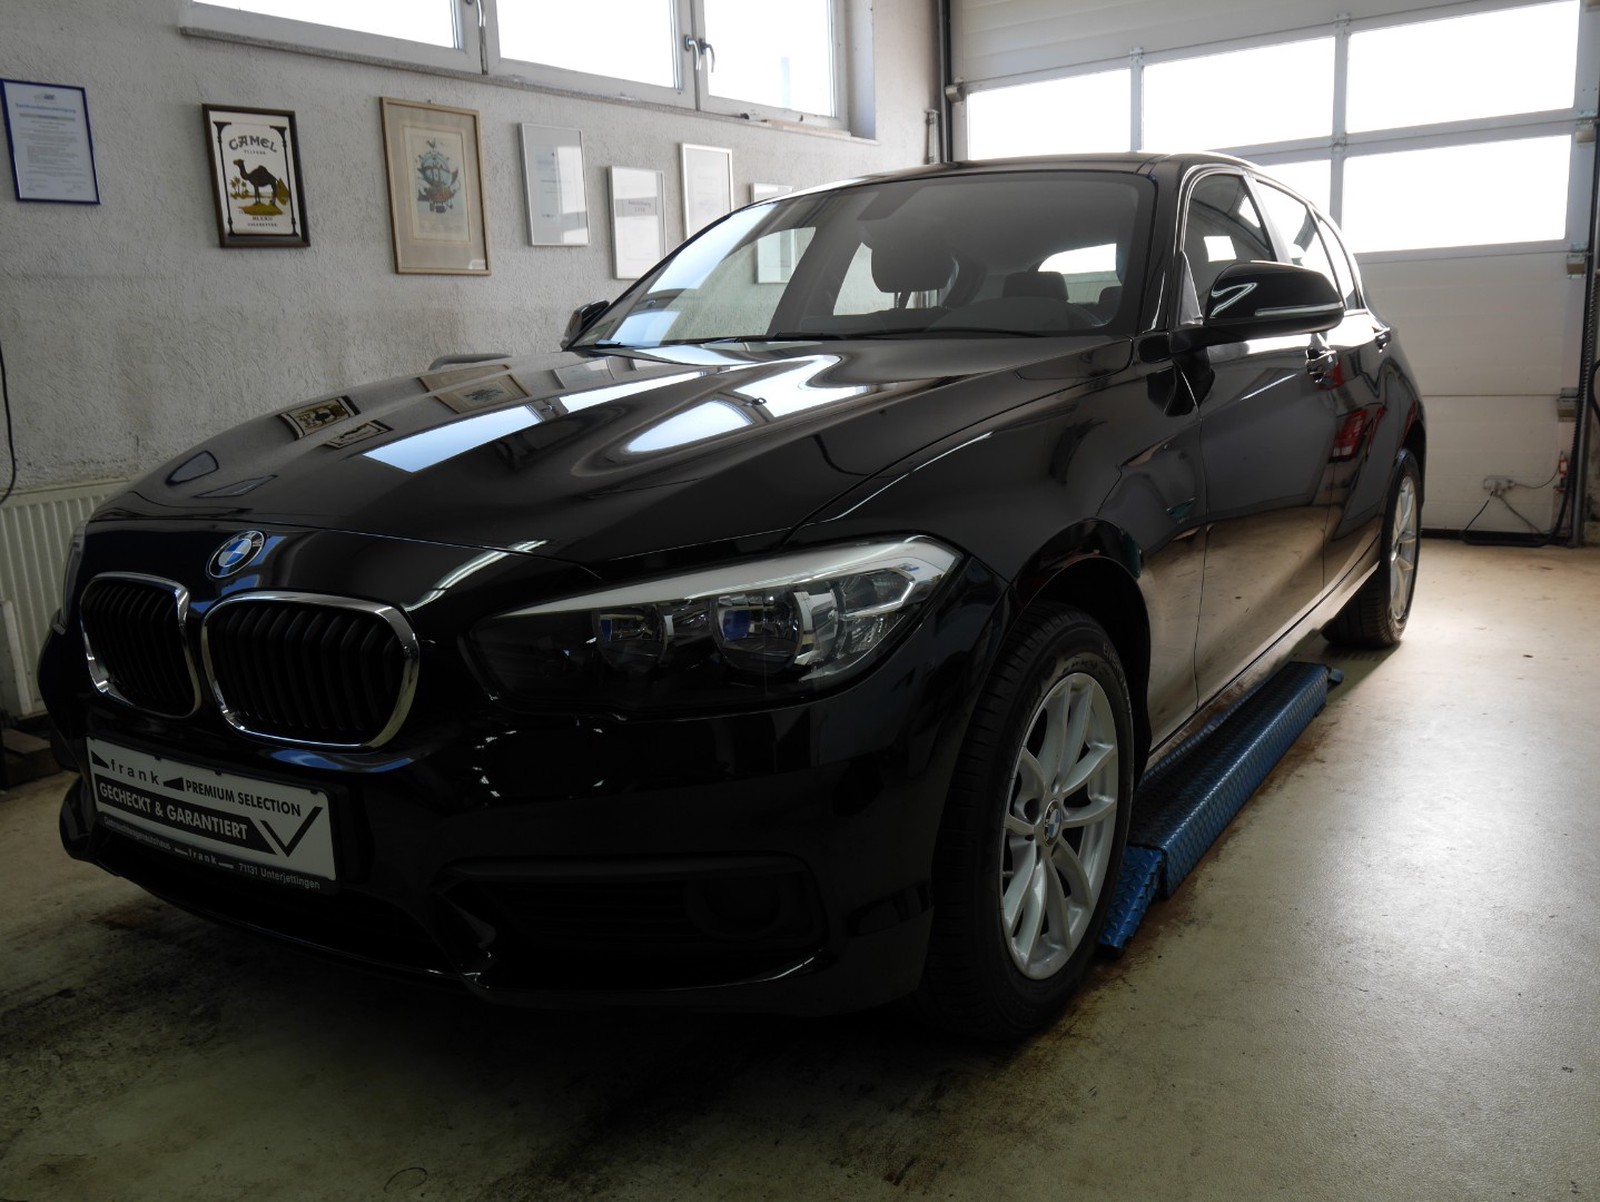 BMW 116 i gebraucht kaufen in Jettingen Württ Preis 12900